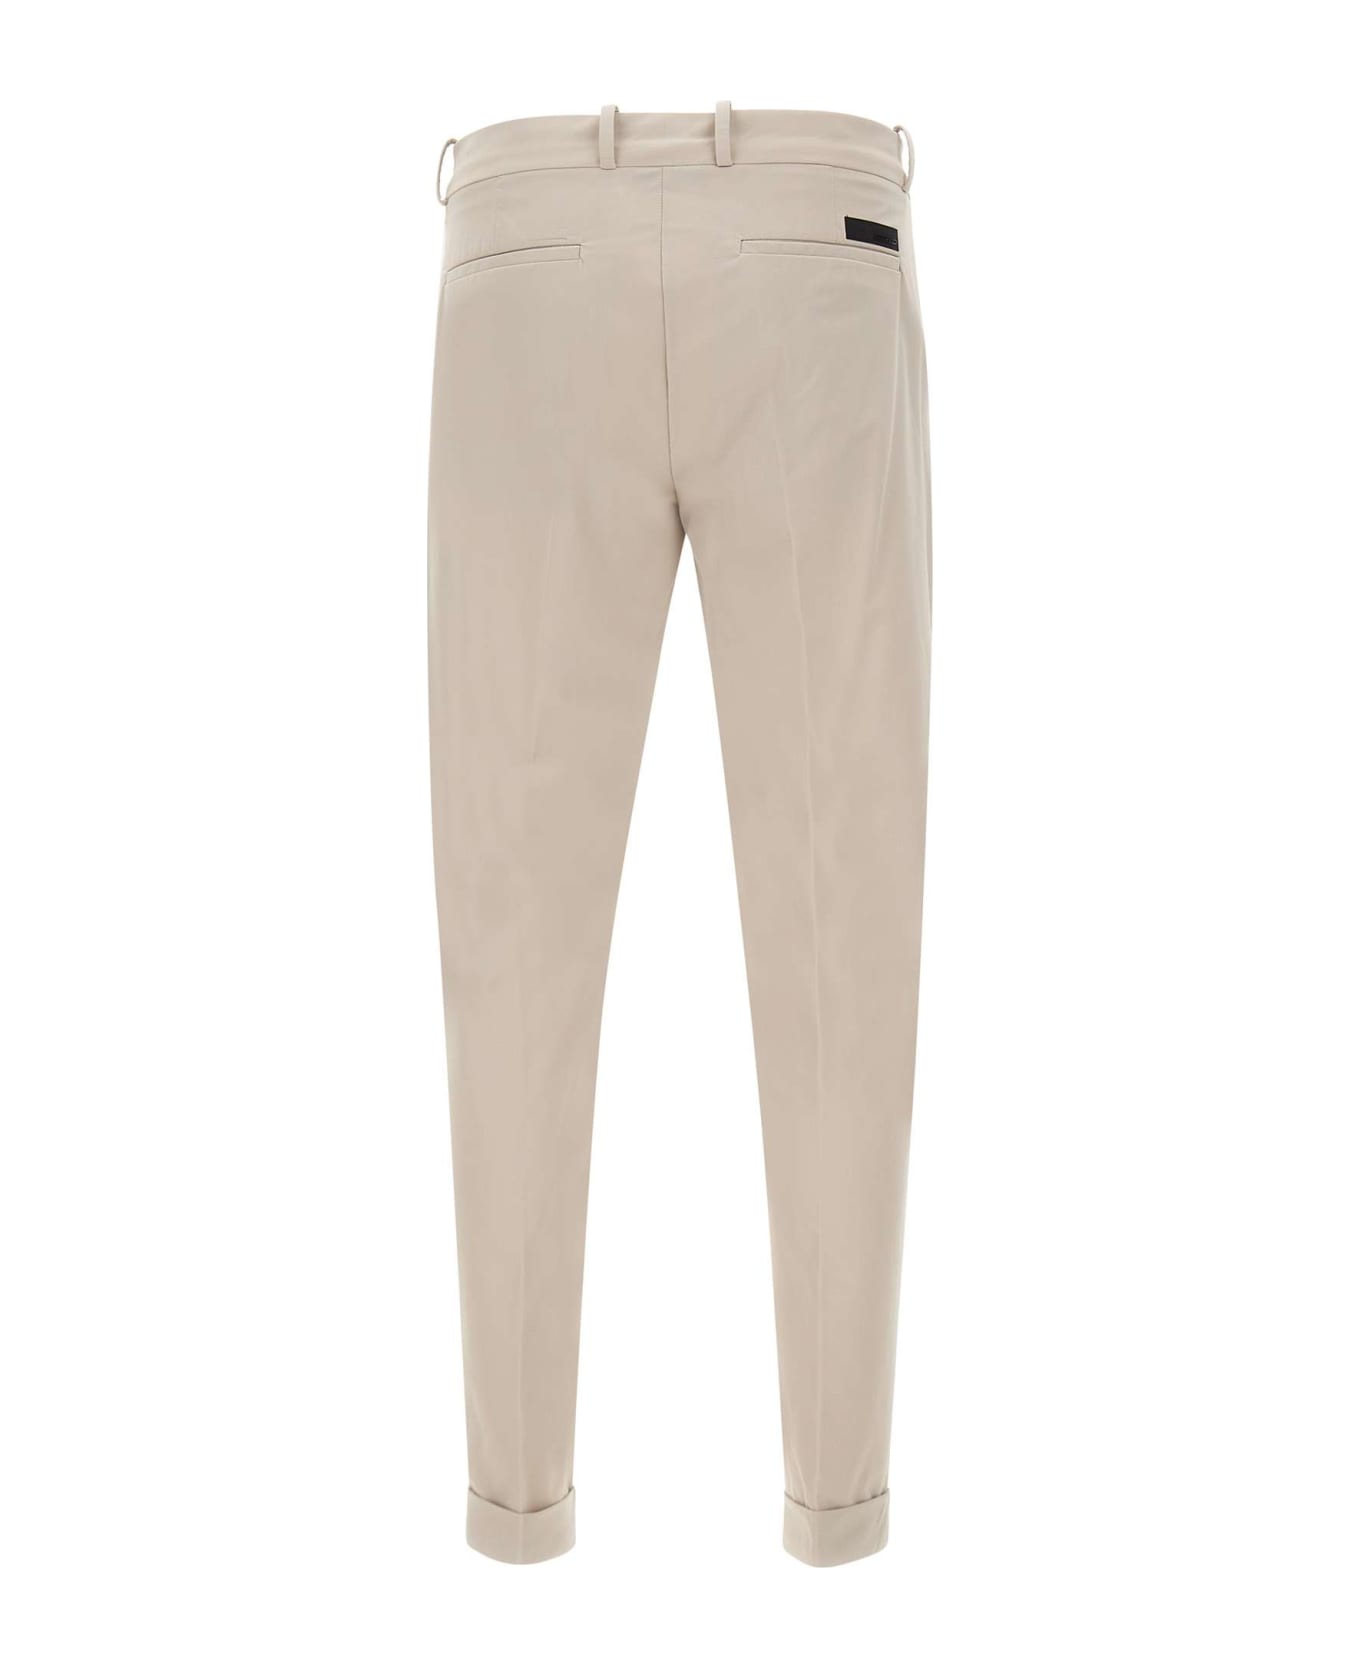 RRD - Roberto Ricci Design Men's Trousers "revo Chino" - BEIGE